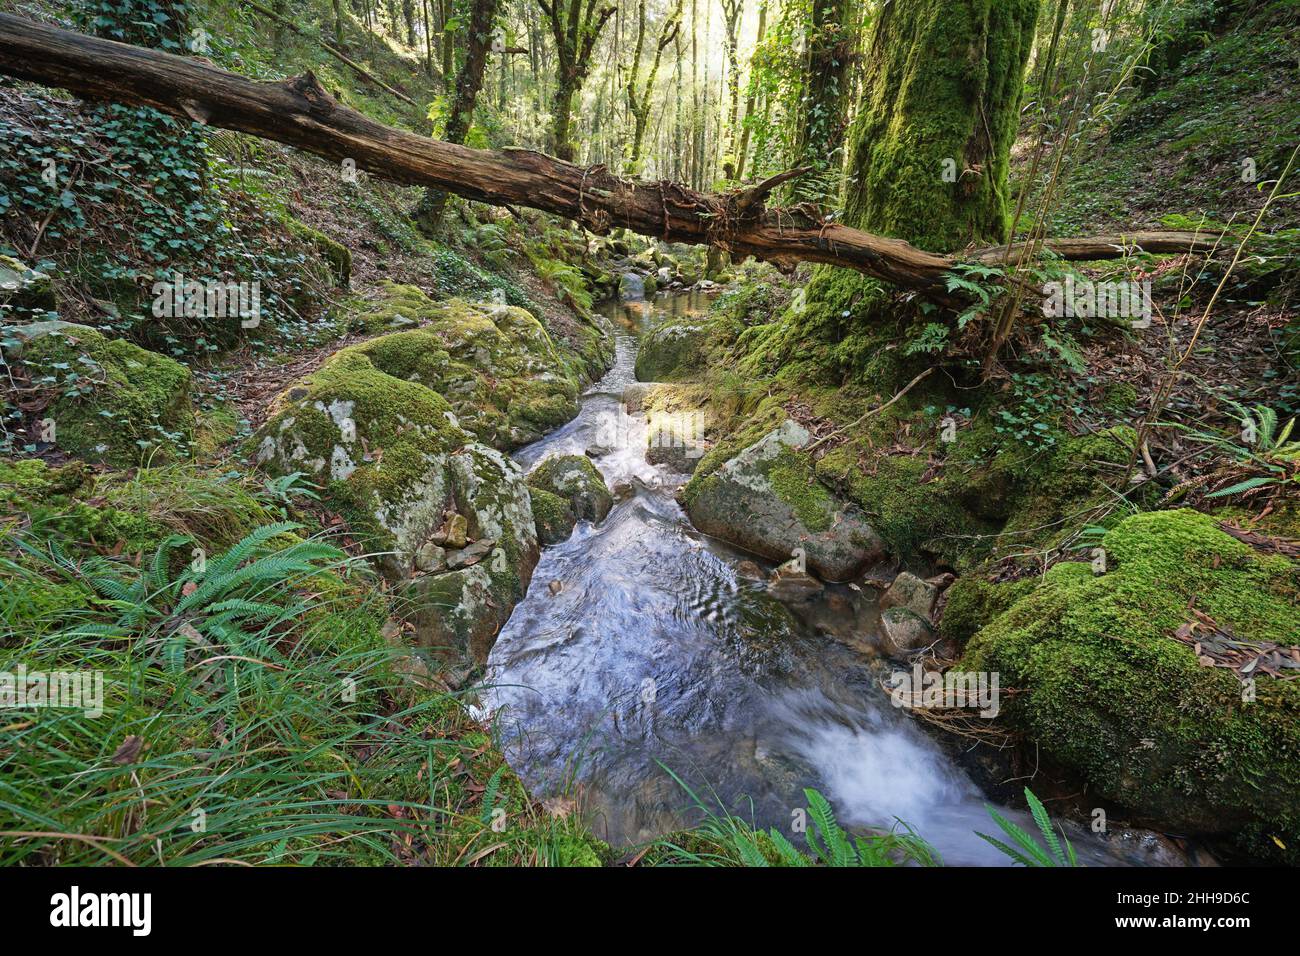 Ruisseau sauvage dans la forêt, Espagne, Galice, Rio de la Fraga, province de Pontevedra Banque D'Images